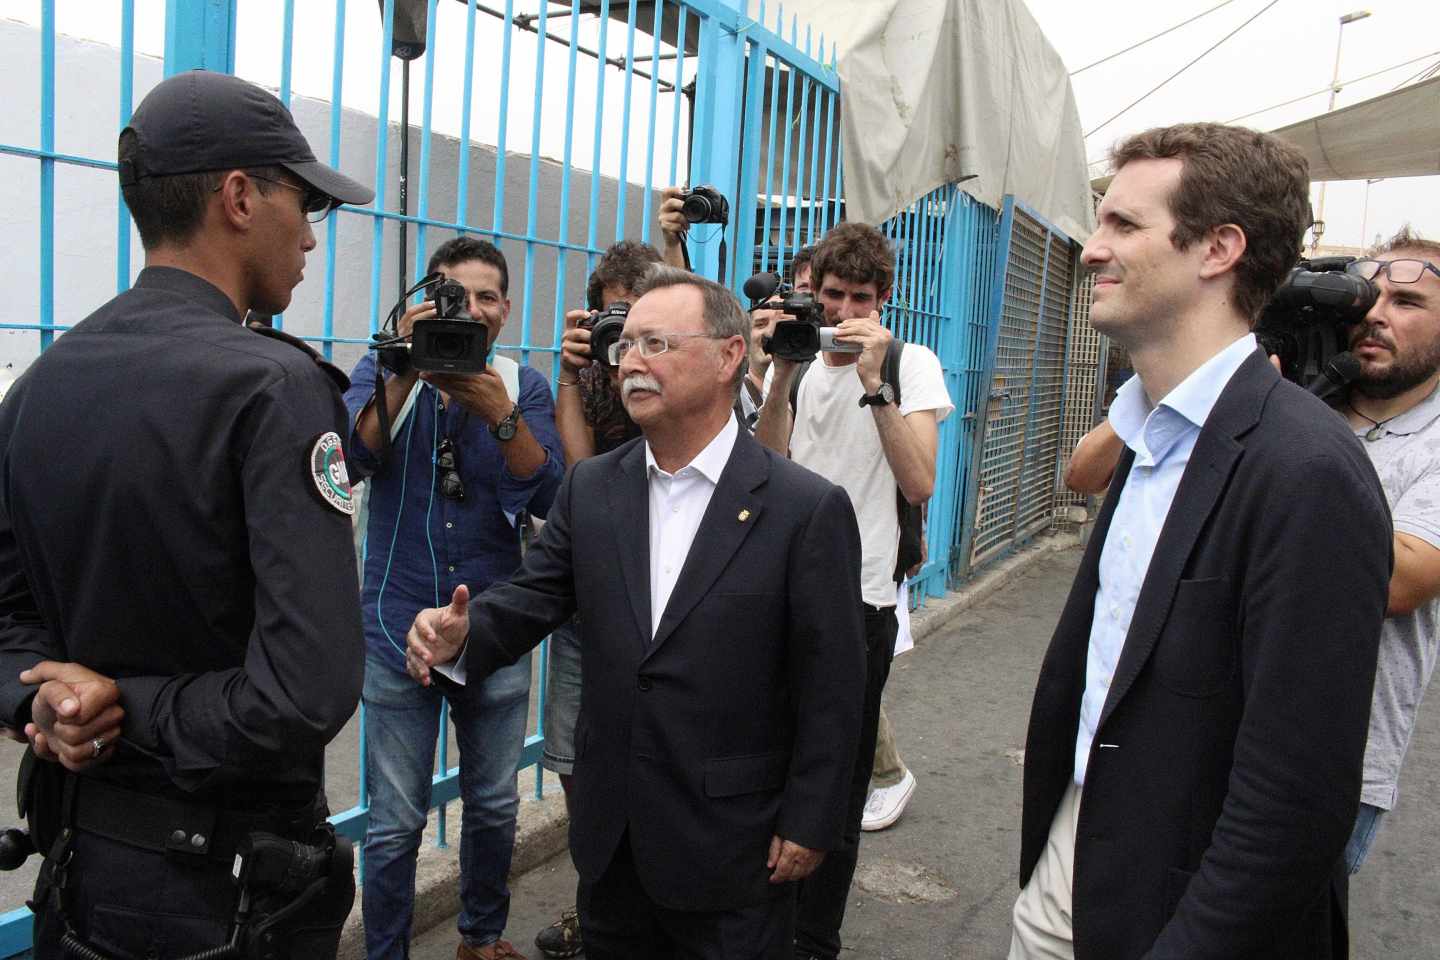 Presidente de la Ciudad Autónoma de Ceuta, Juan Jesús Vivas, con el Presidente del PP, Pablo Casado, en la frontera de Ceuta con Marruecos